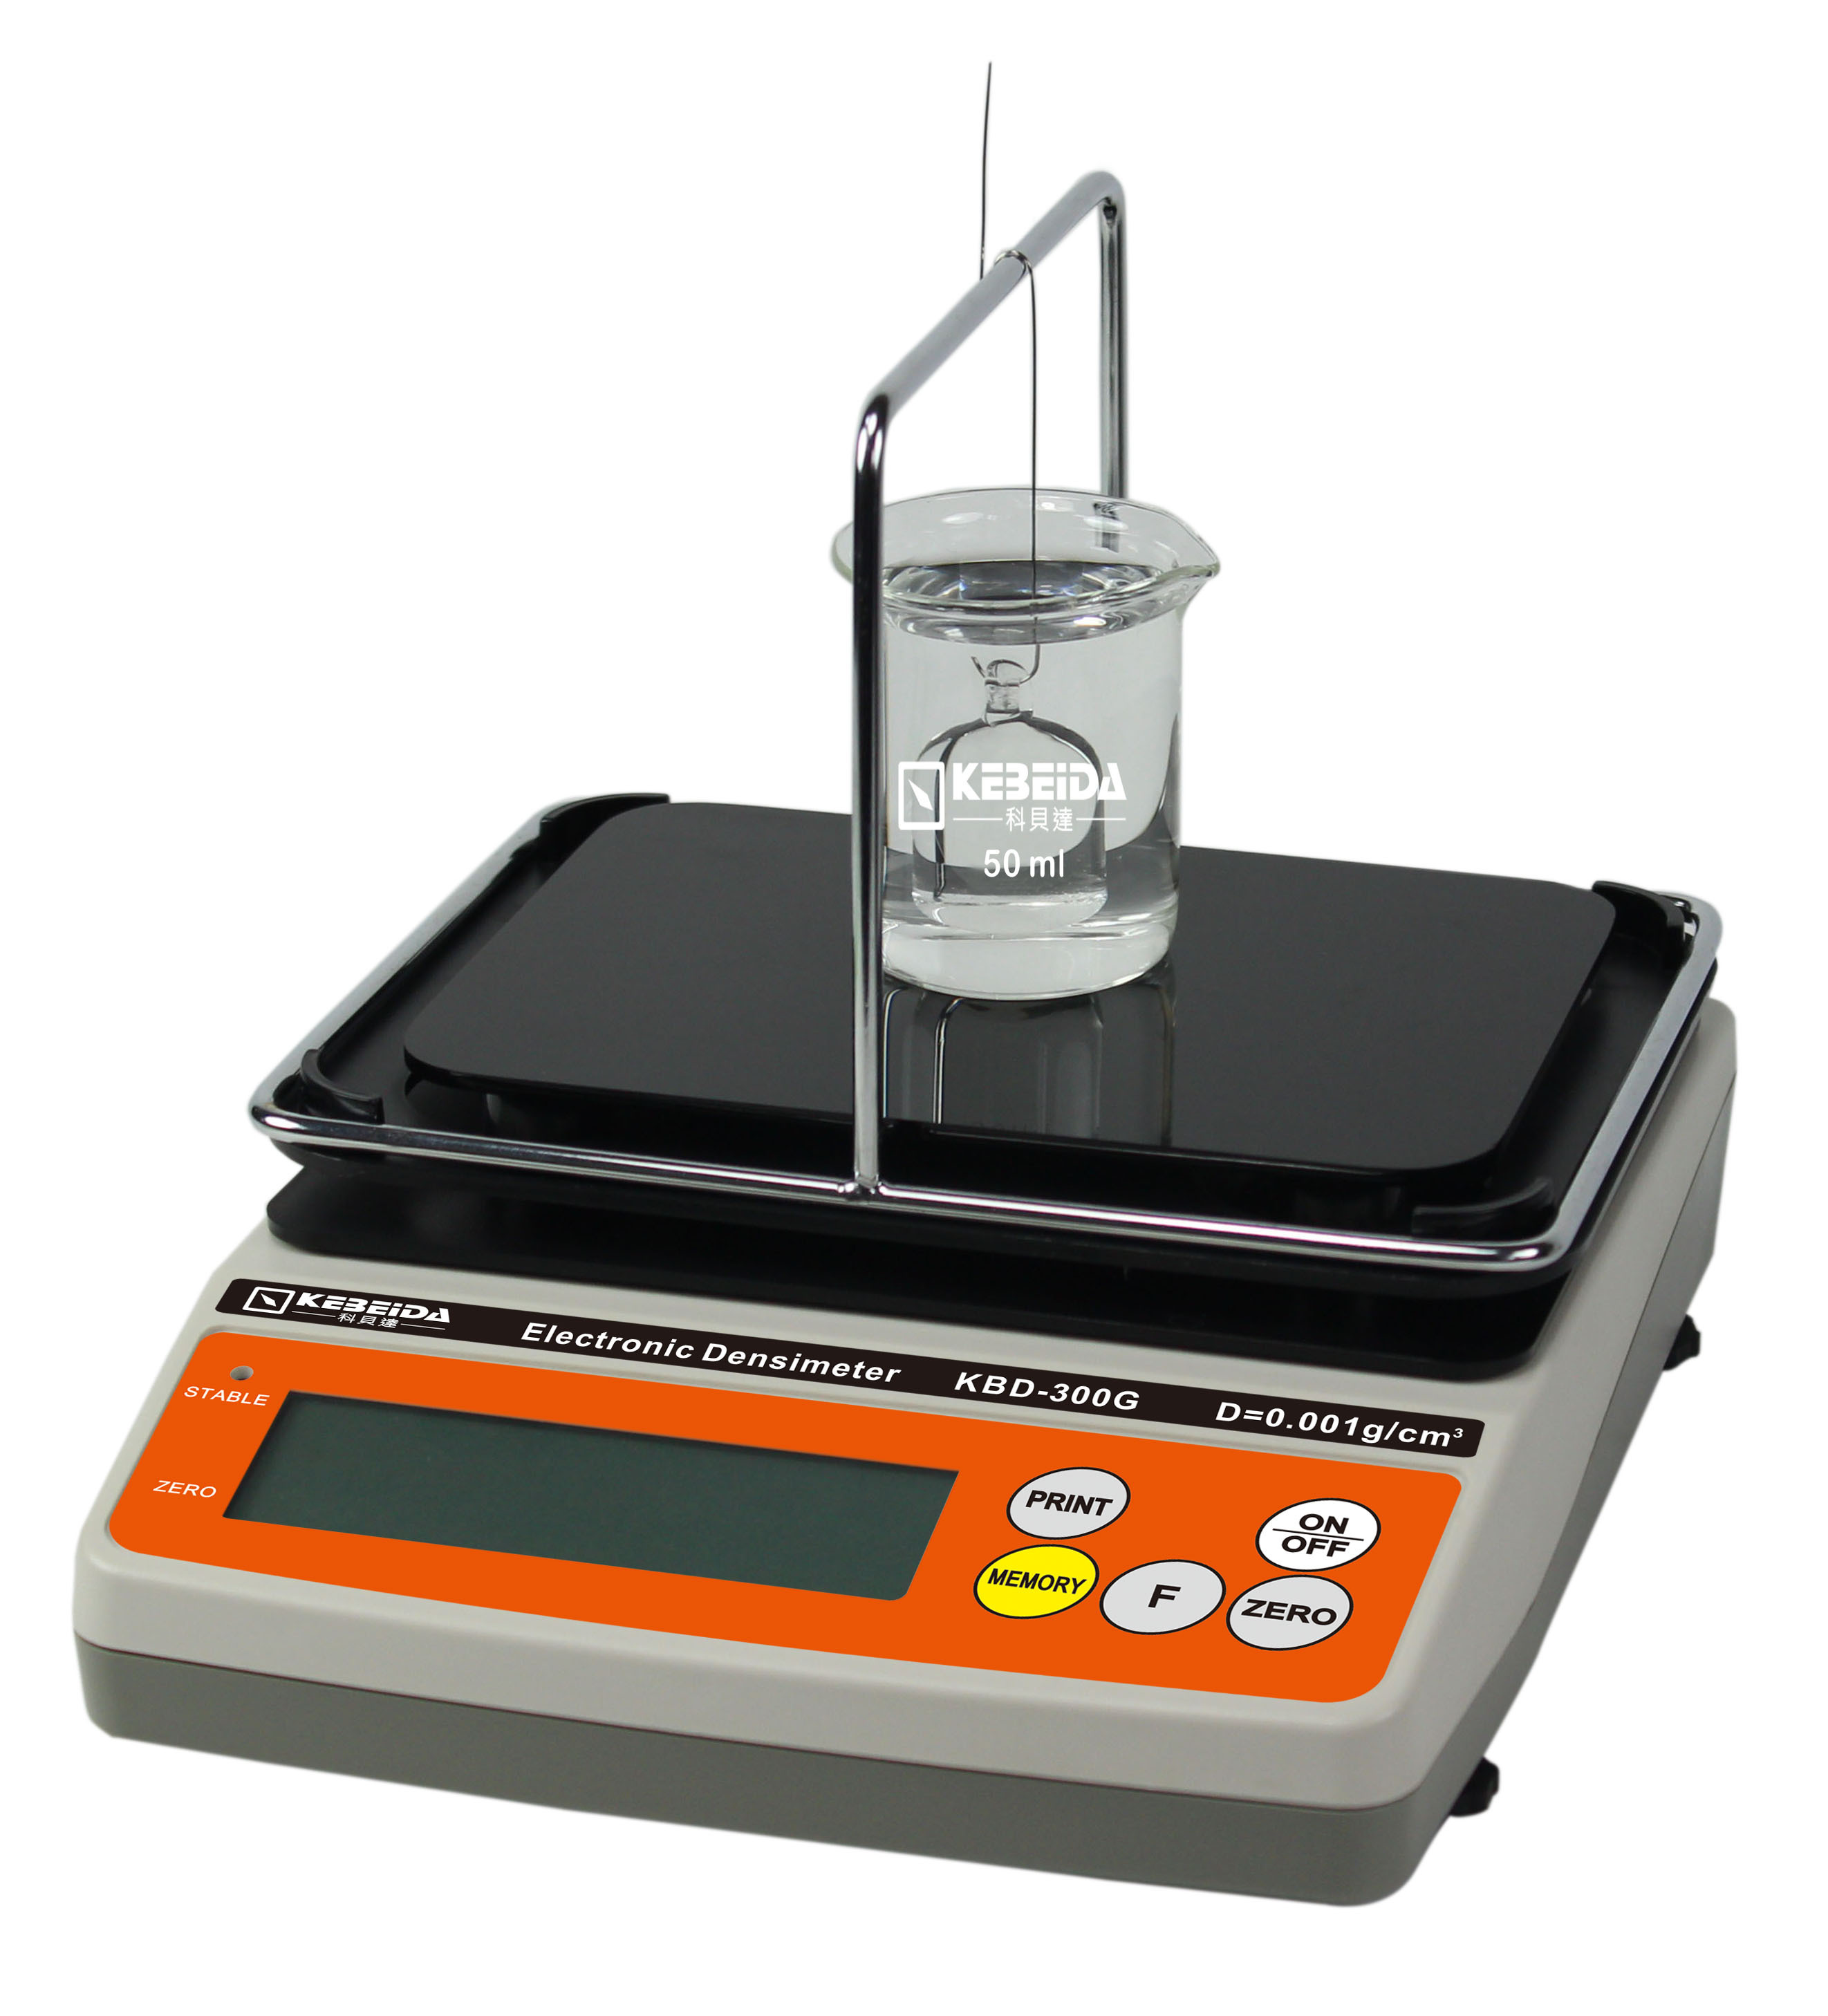 氨水浓度测试仪泰州科贝达科学仪器有限公司